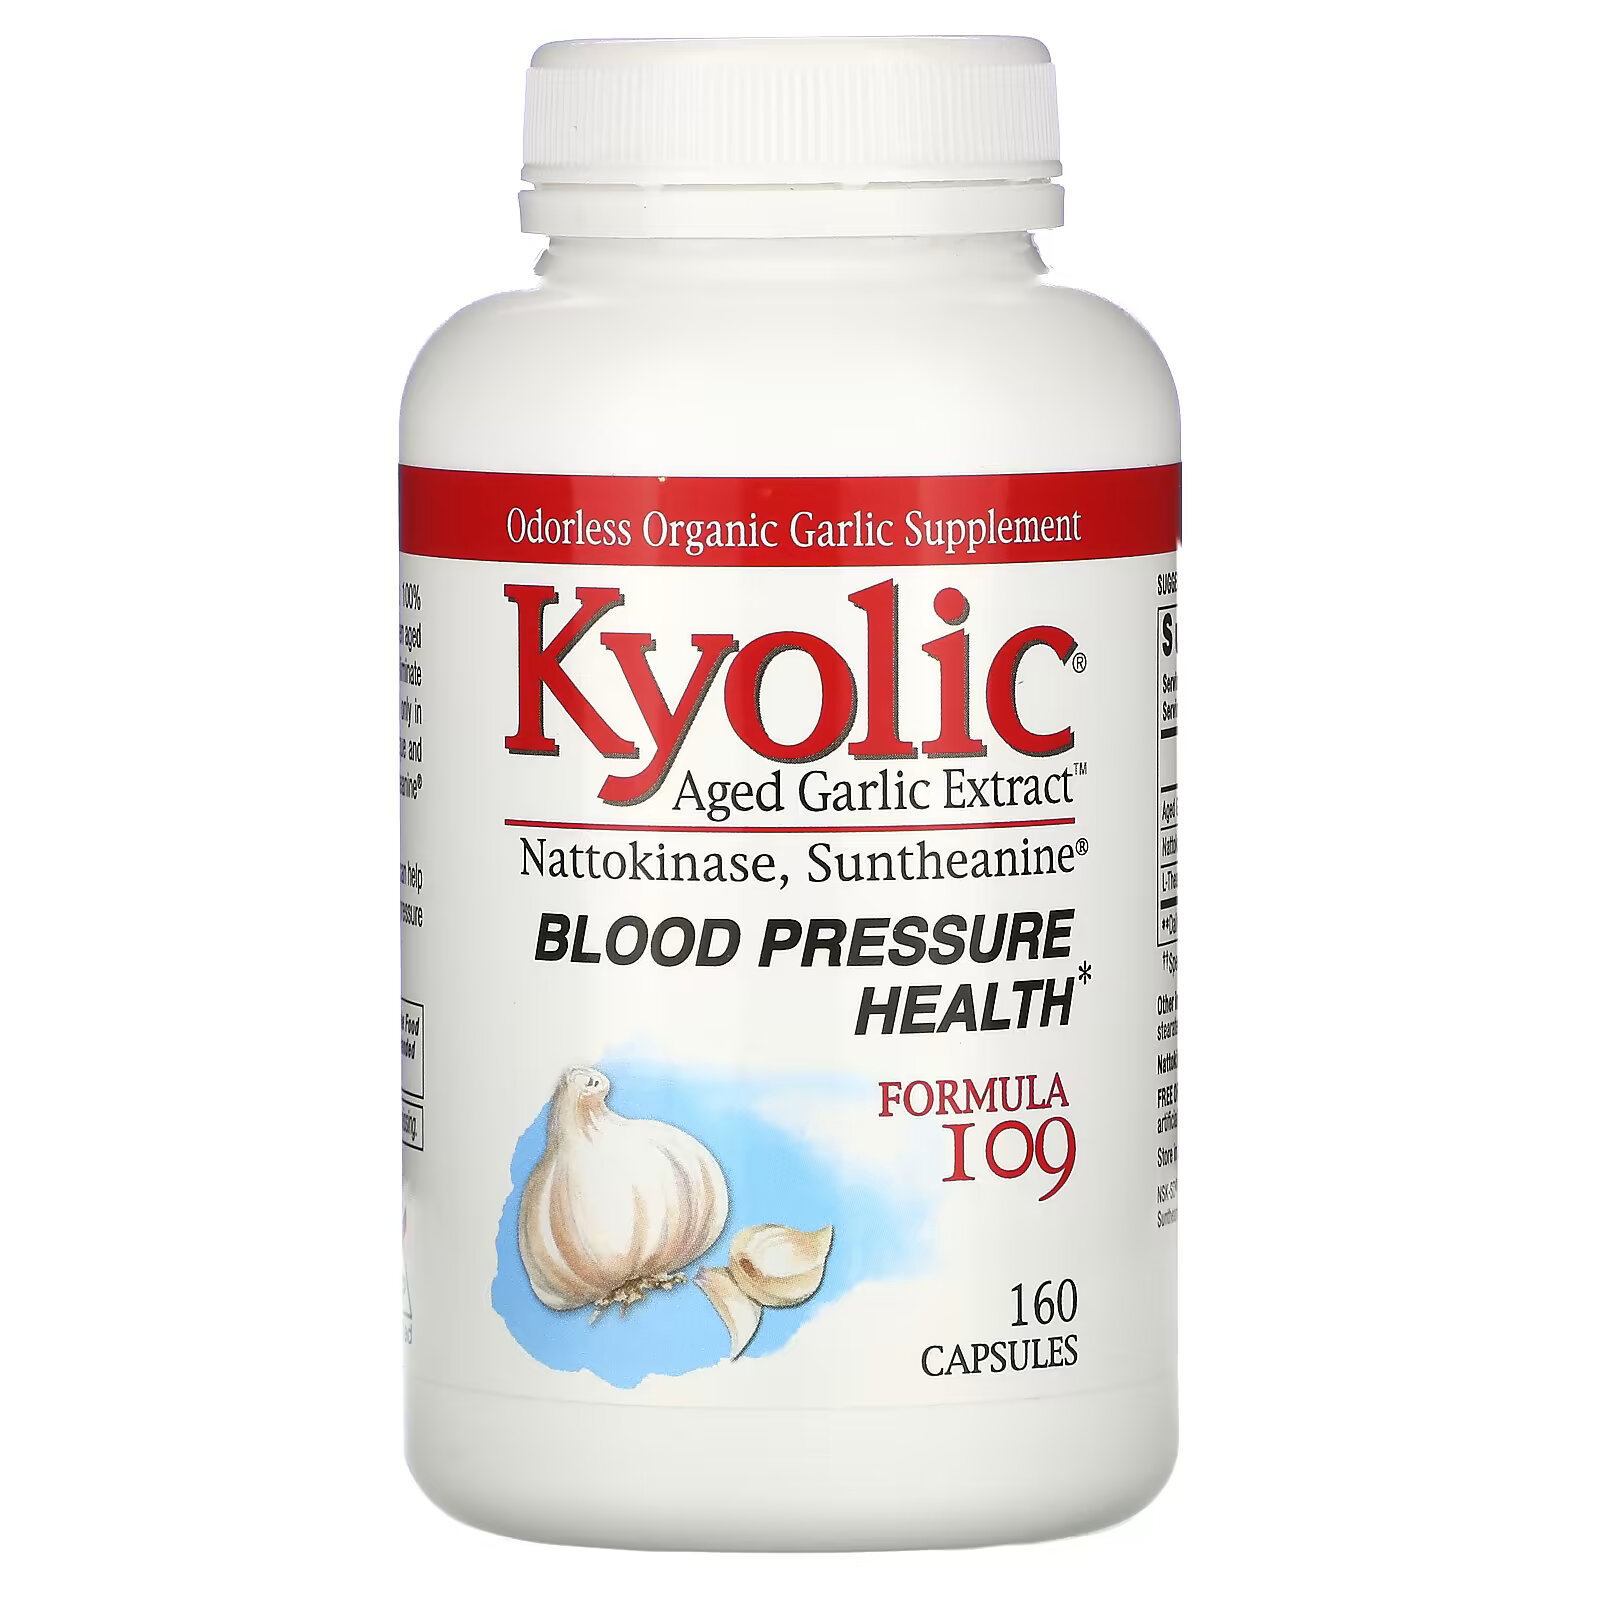 Kyolic, Aged Garlic Extract, экстракт выдержанного чеснока, для здорового артериального давления, формула 109, 160 капсул kyolic aged garlic extract выдержанный экстракт чеснока для здорового артериального давления формула 109 80 капсул